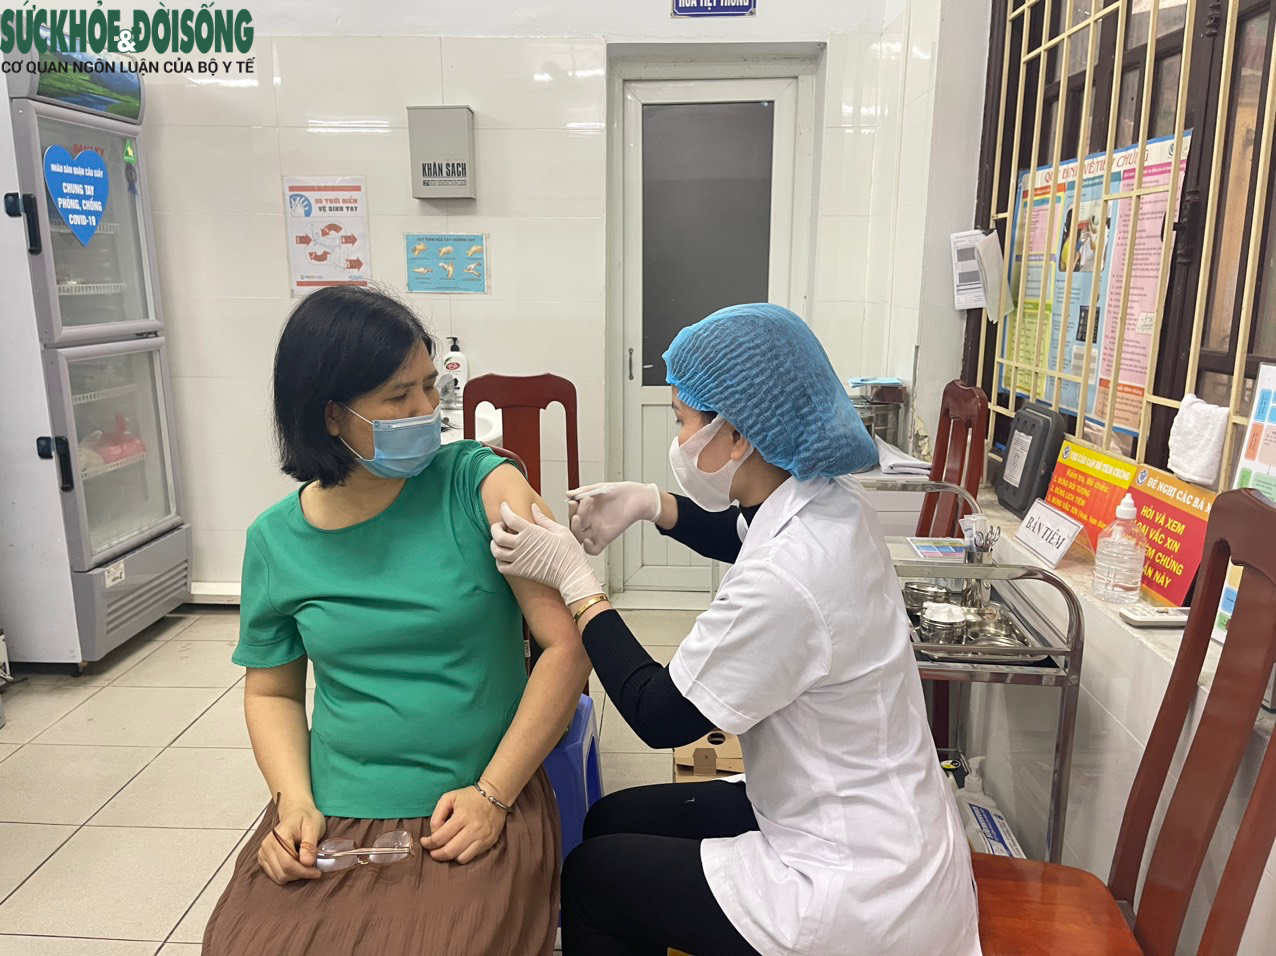 Ca mắc COVID-19 tiếp tục tăng, người Hà Nội chủ động đi tiêm vaccine - Ảnh 6.